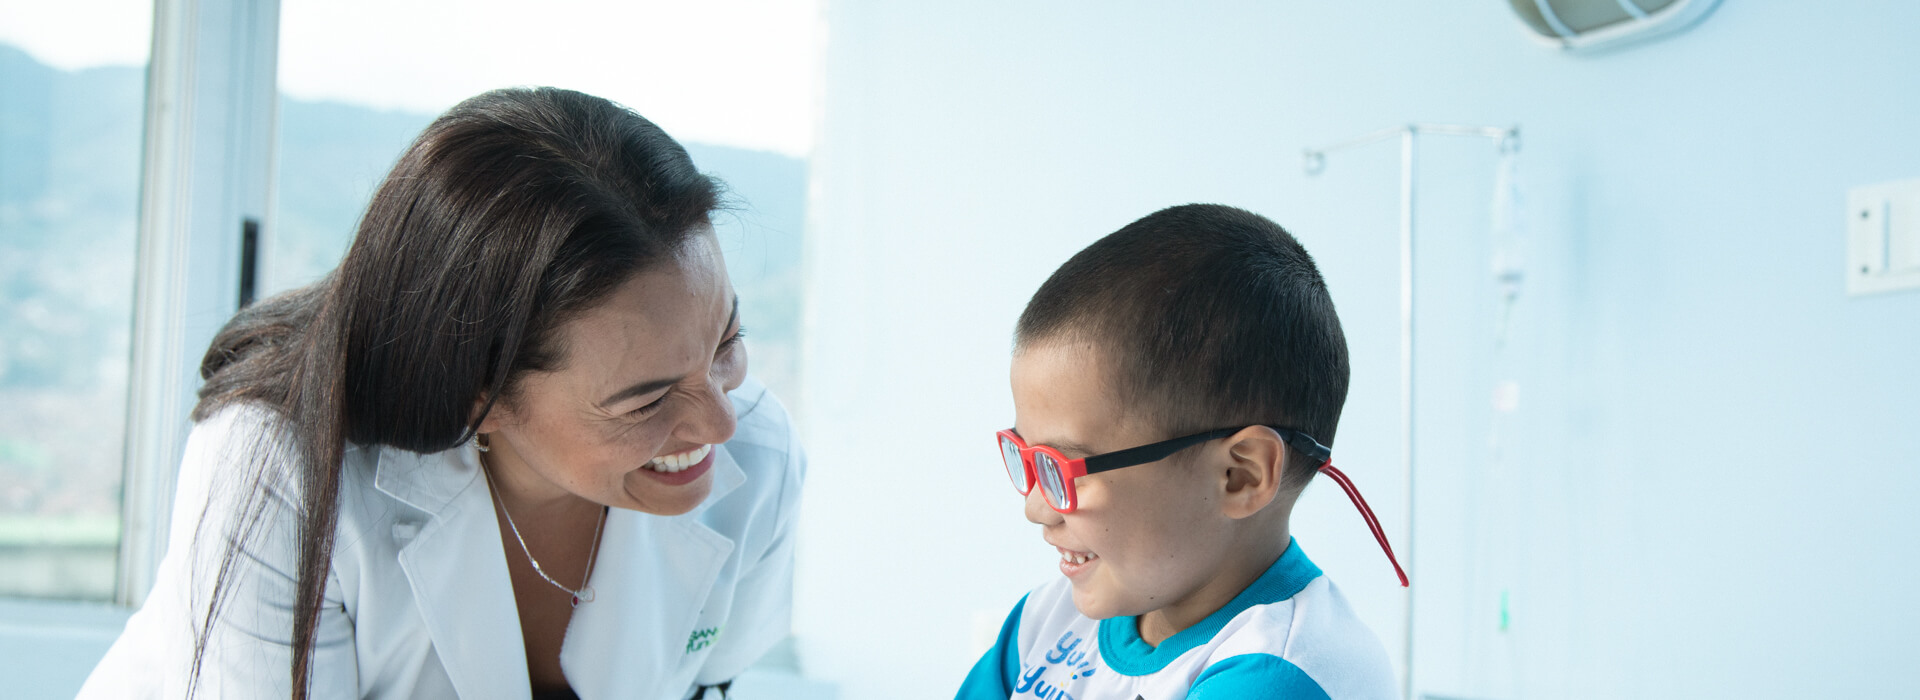 Doctora jugando con un niño con gafas rojas